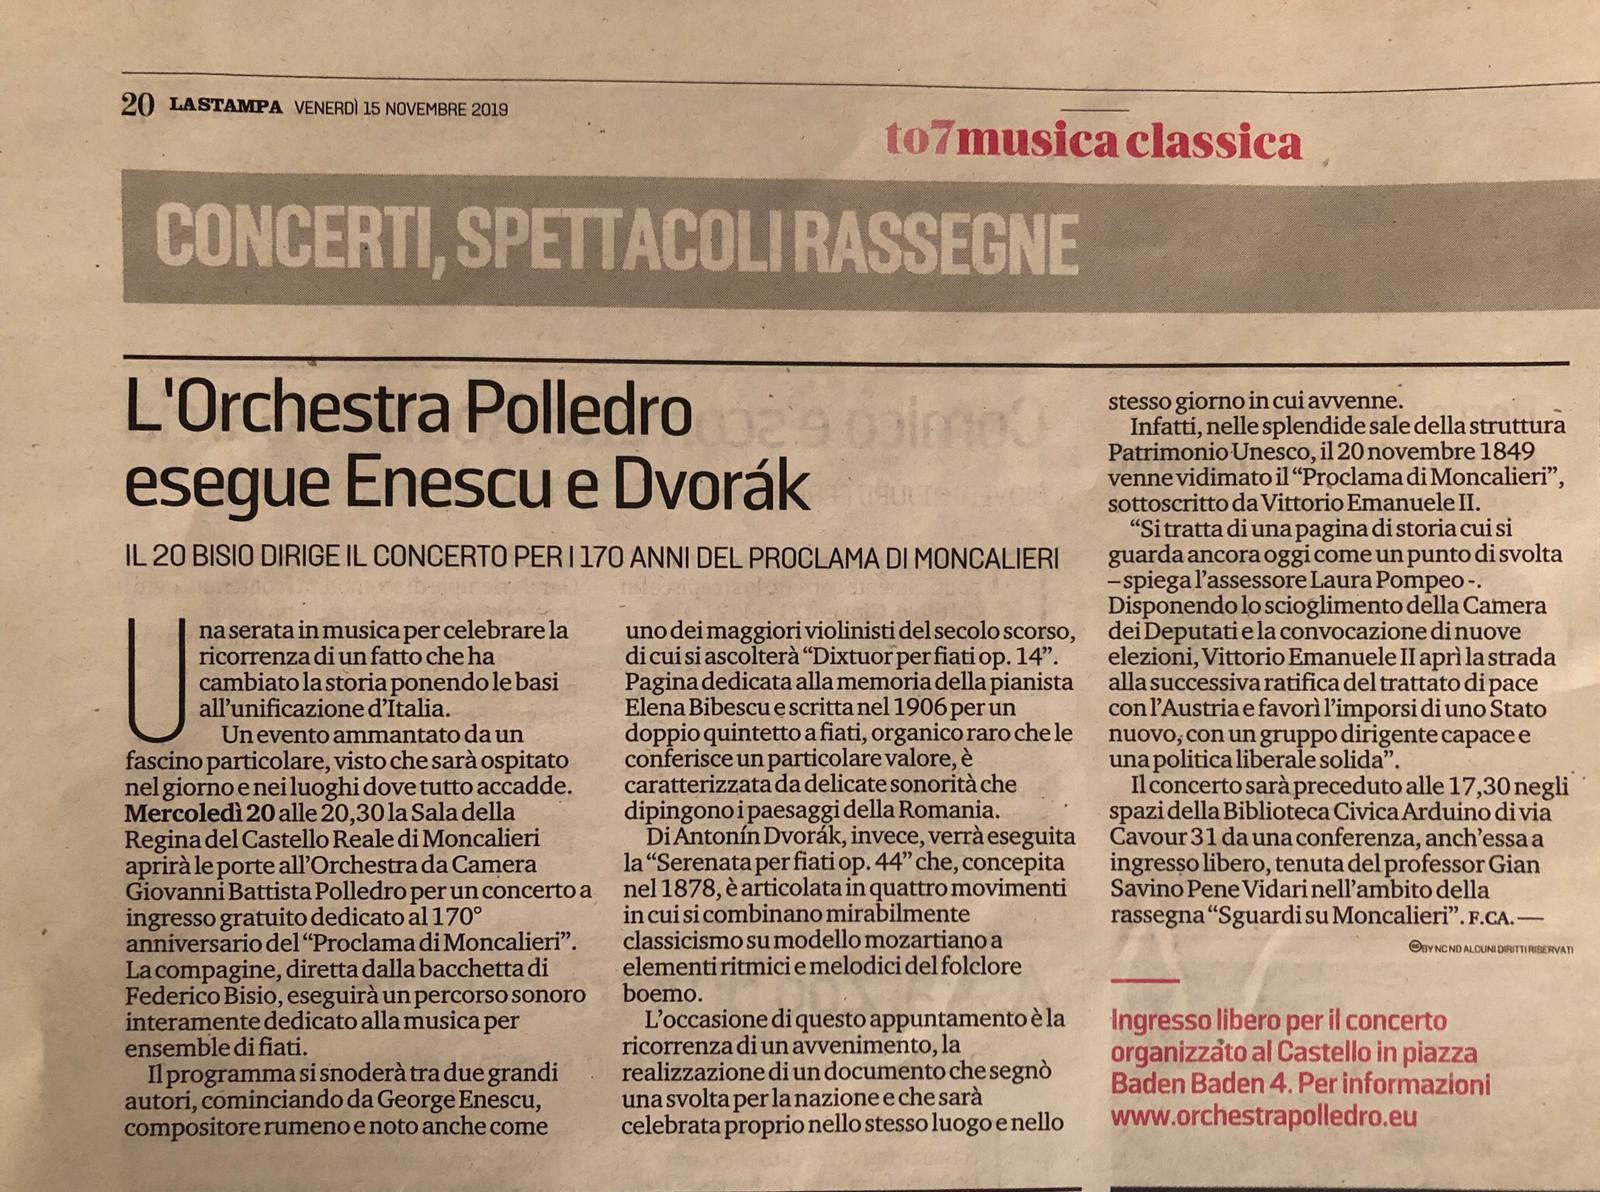 Orchestra Polledro esegue Enescu e Dvorak